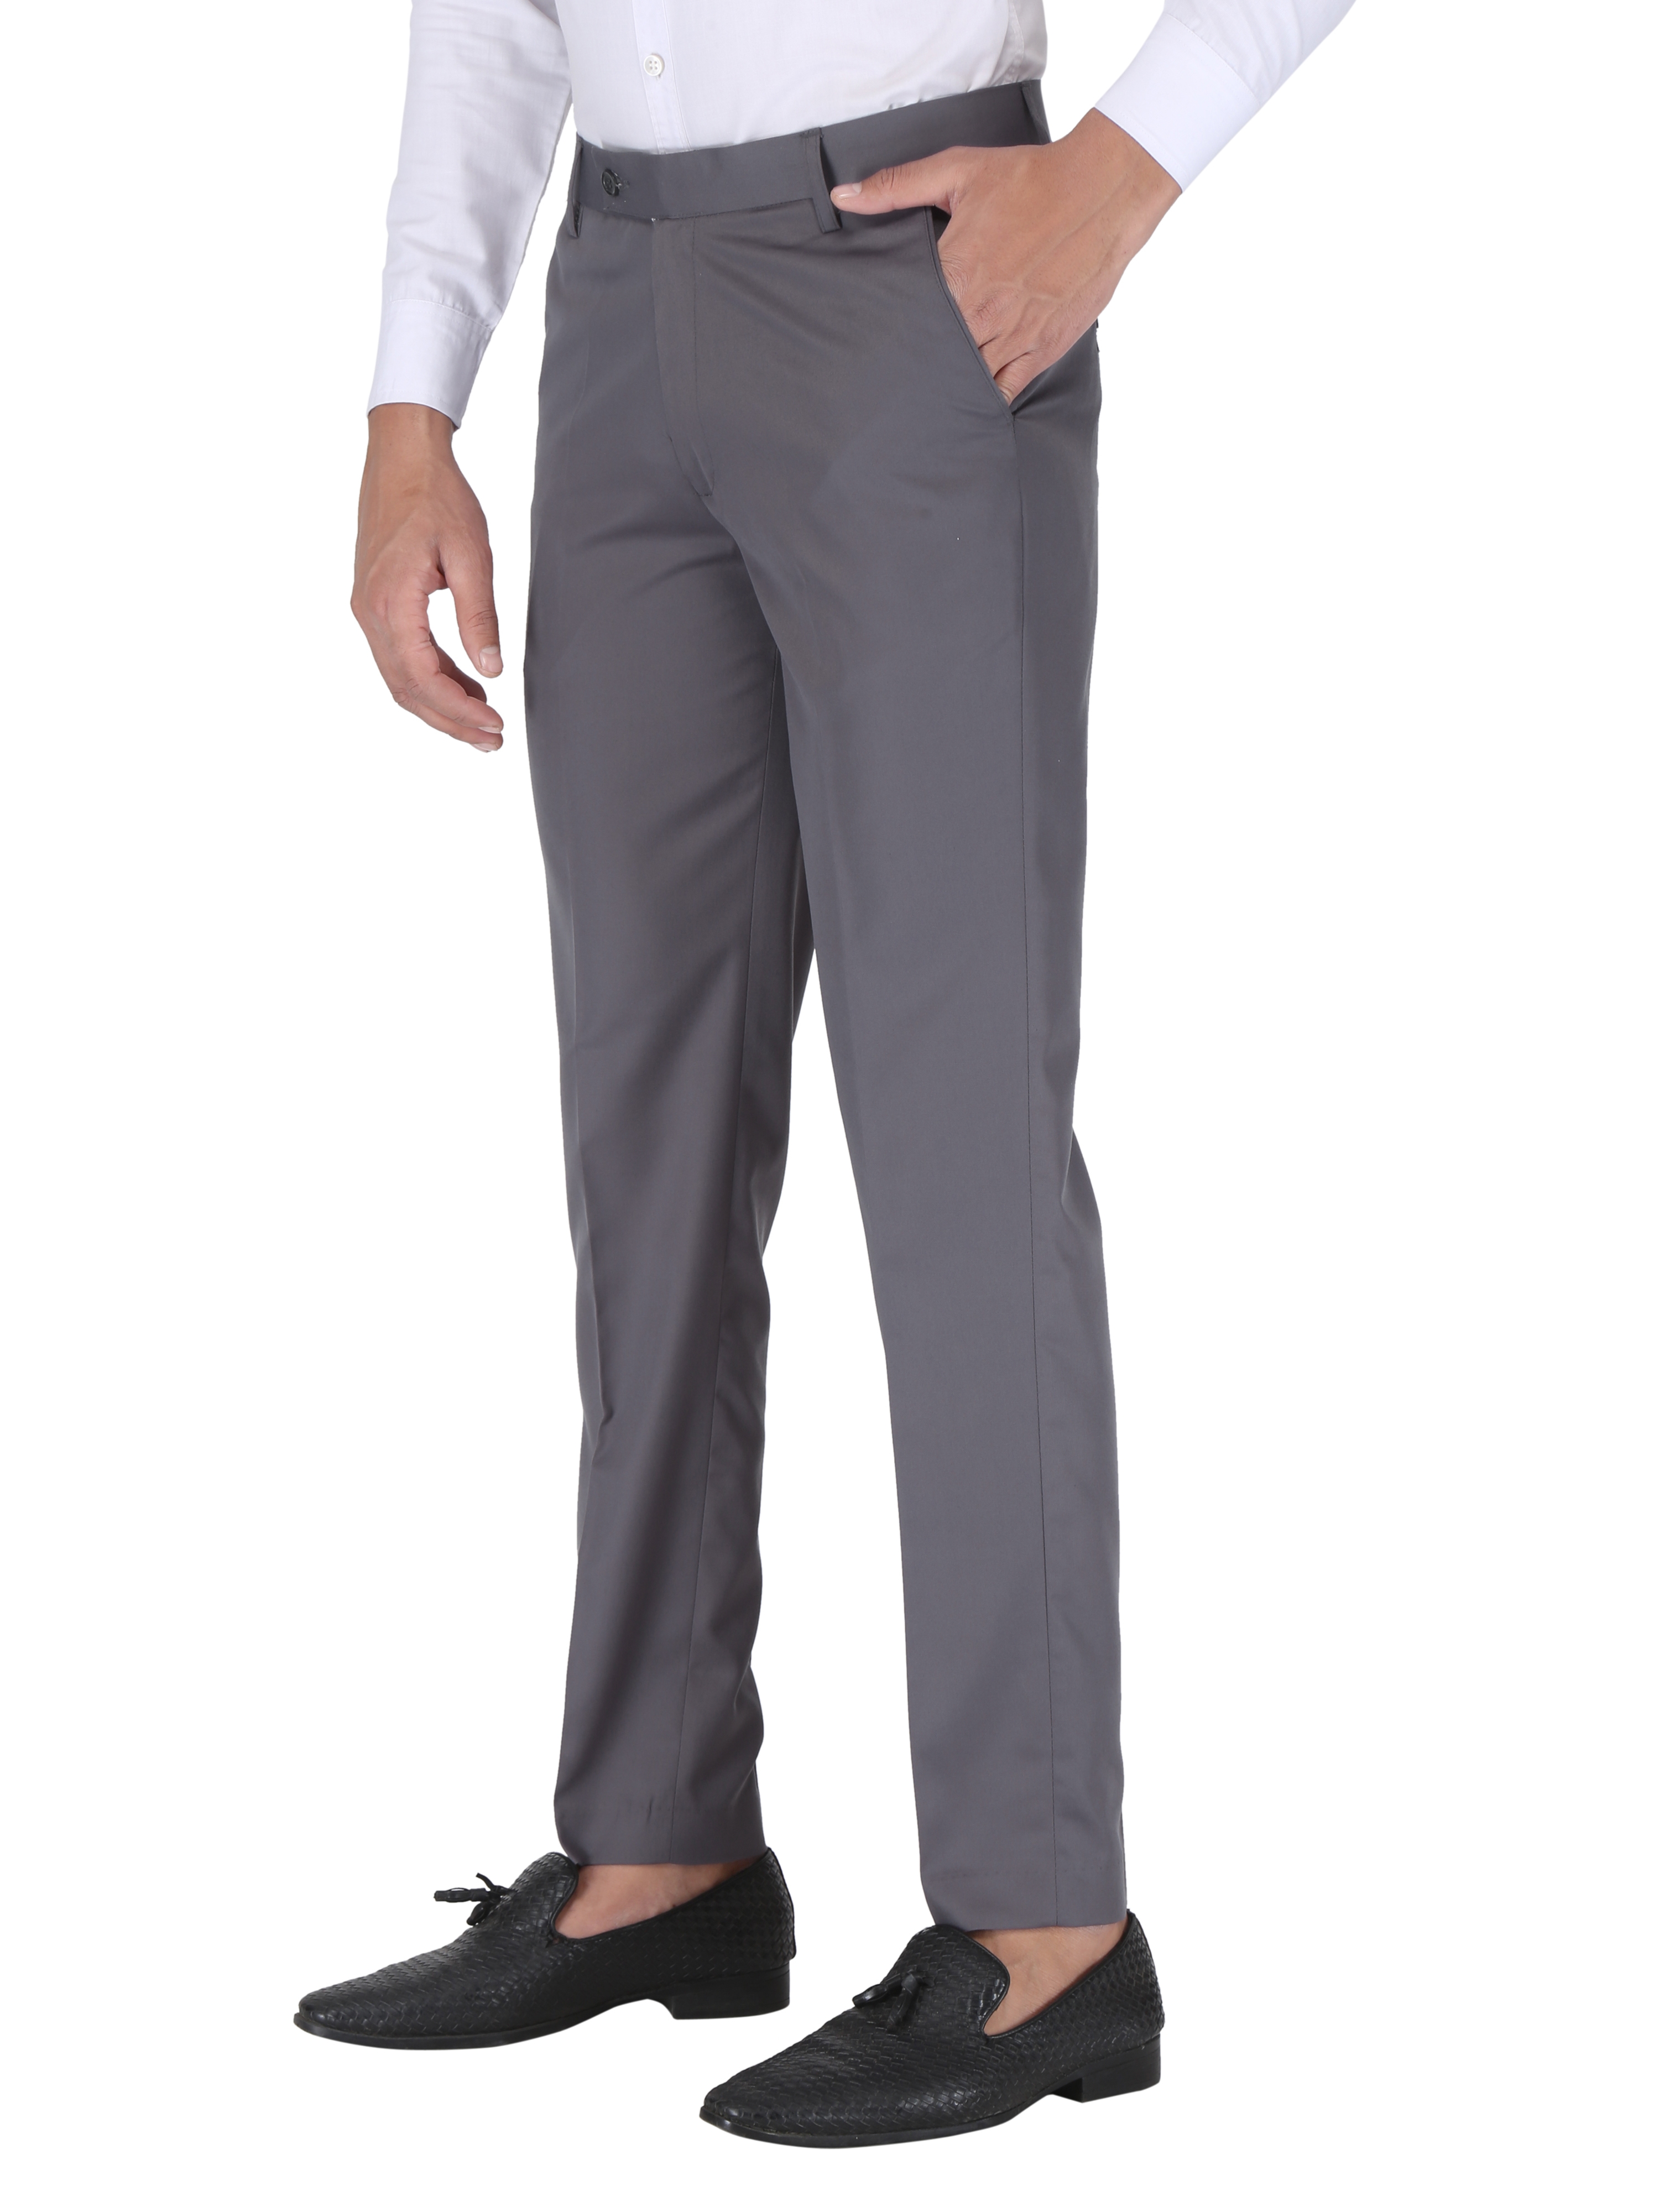 CHARLIE CARLOS | Dark Grey Men's Contemporary Reguler Leg Business Pants in Virgin PolyViscose Regular Fit Formal Trousers/Pants 0